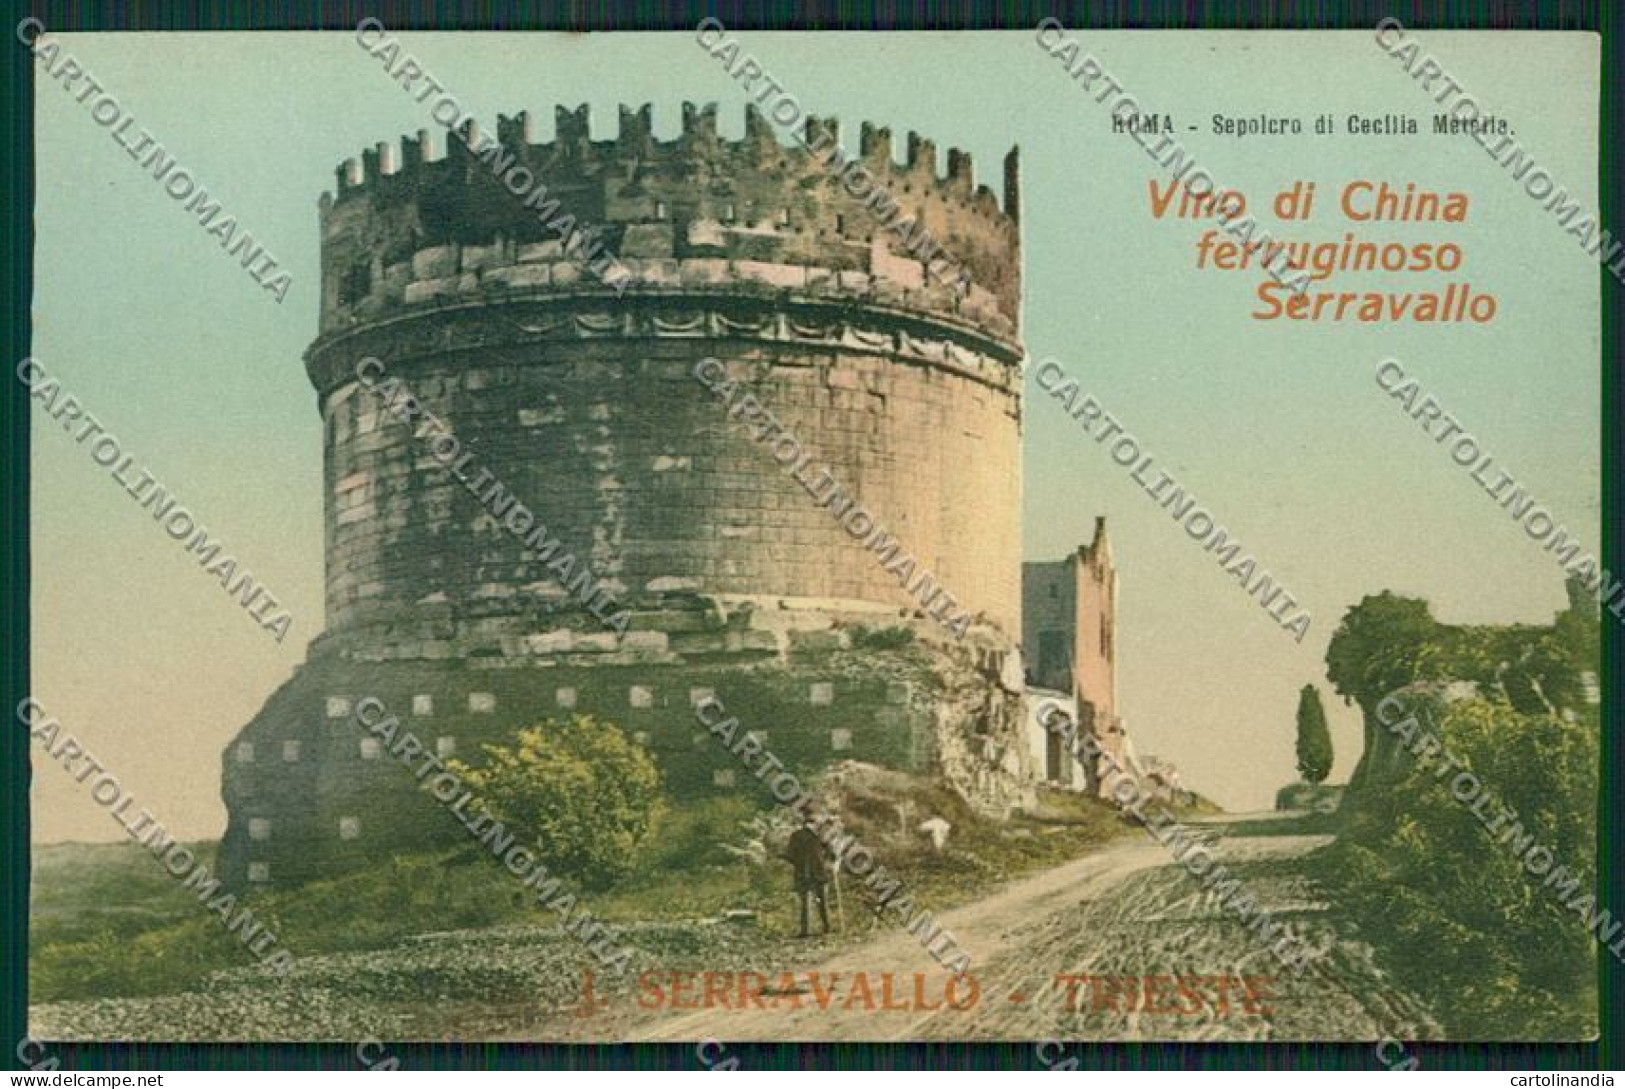 Trieste Vino China Ferruginoso Serravallo Pubblicitaria Roma Cartolina ZC0939 - Trieste